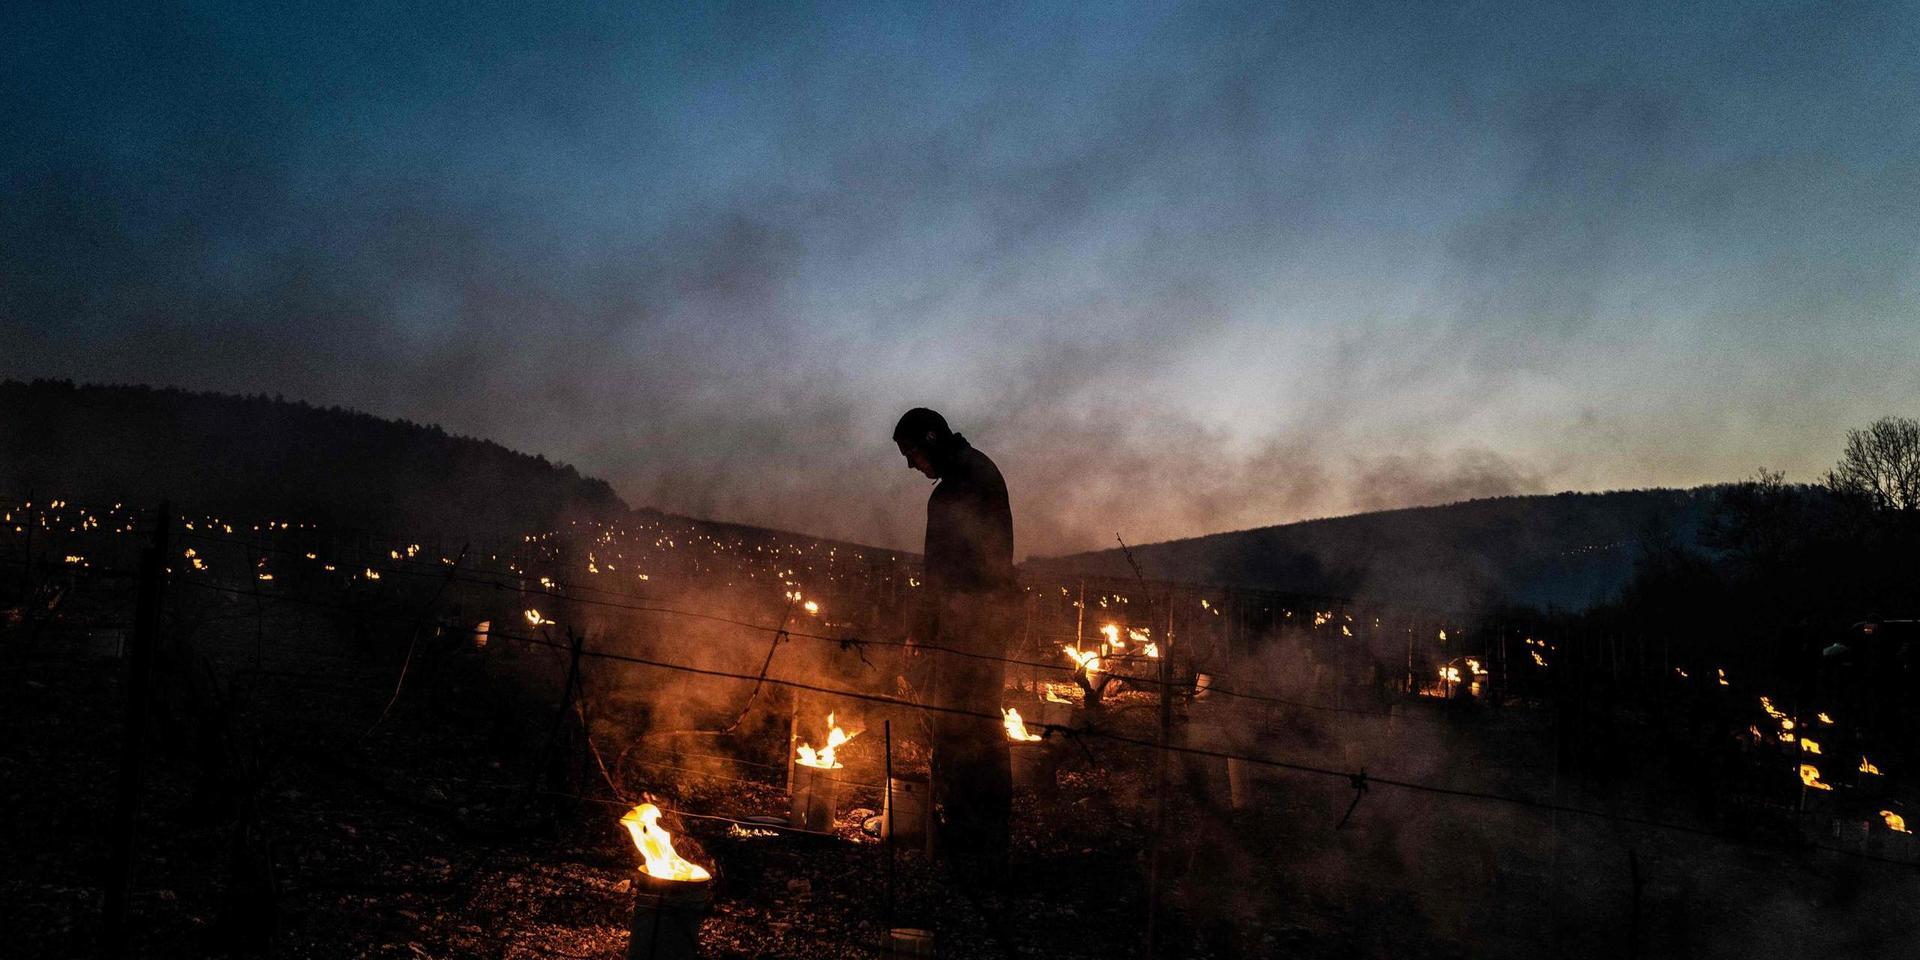 Vinodlare i Frankrike försöker med hjälp av eld skydda skördarna från frost.